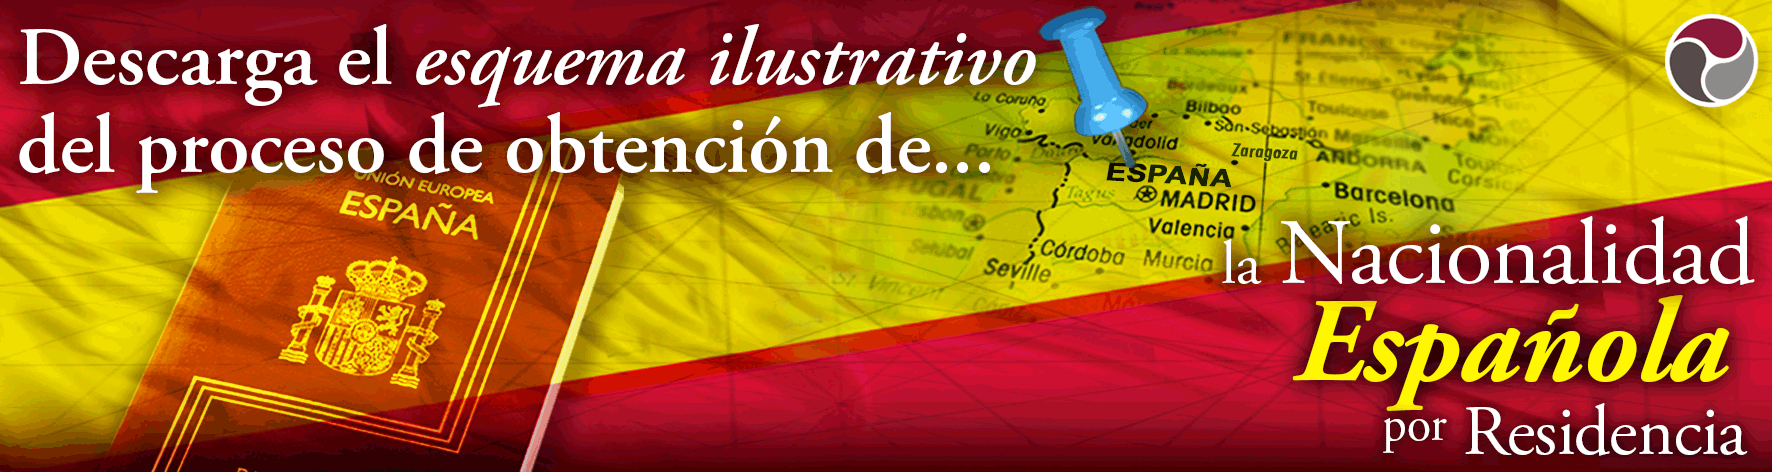 Nacionalidad ad web Habeas Legal 2 1 - ¿Qué hacer cuando no te responden a tu solicitud de Nacionalidad Española?